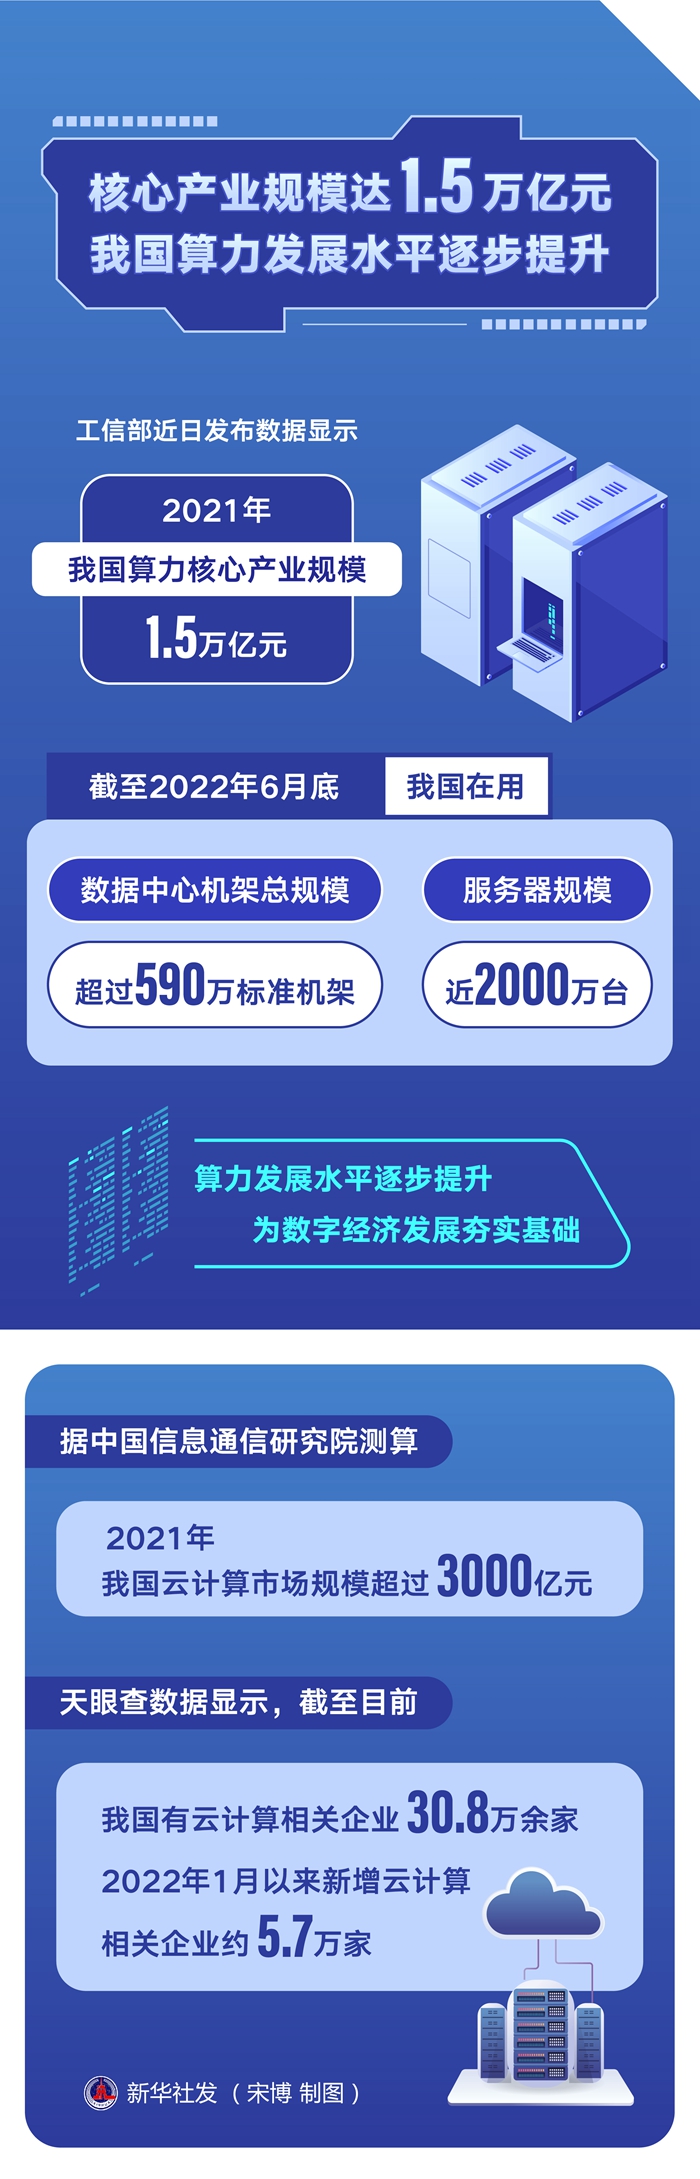 核心産業規模達1.5萬億元，中國算力發展水準逐步提升